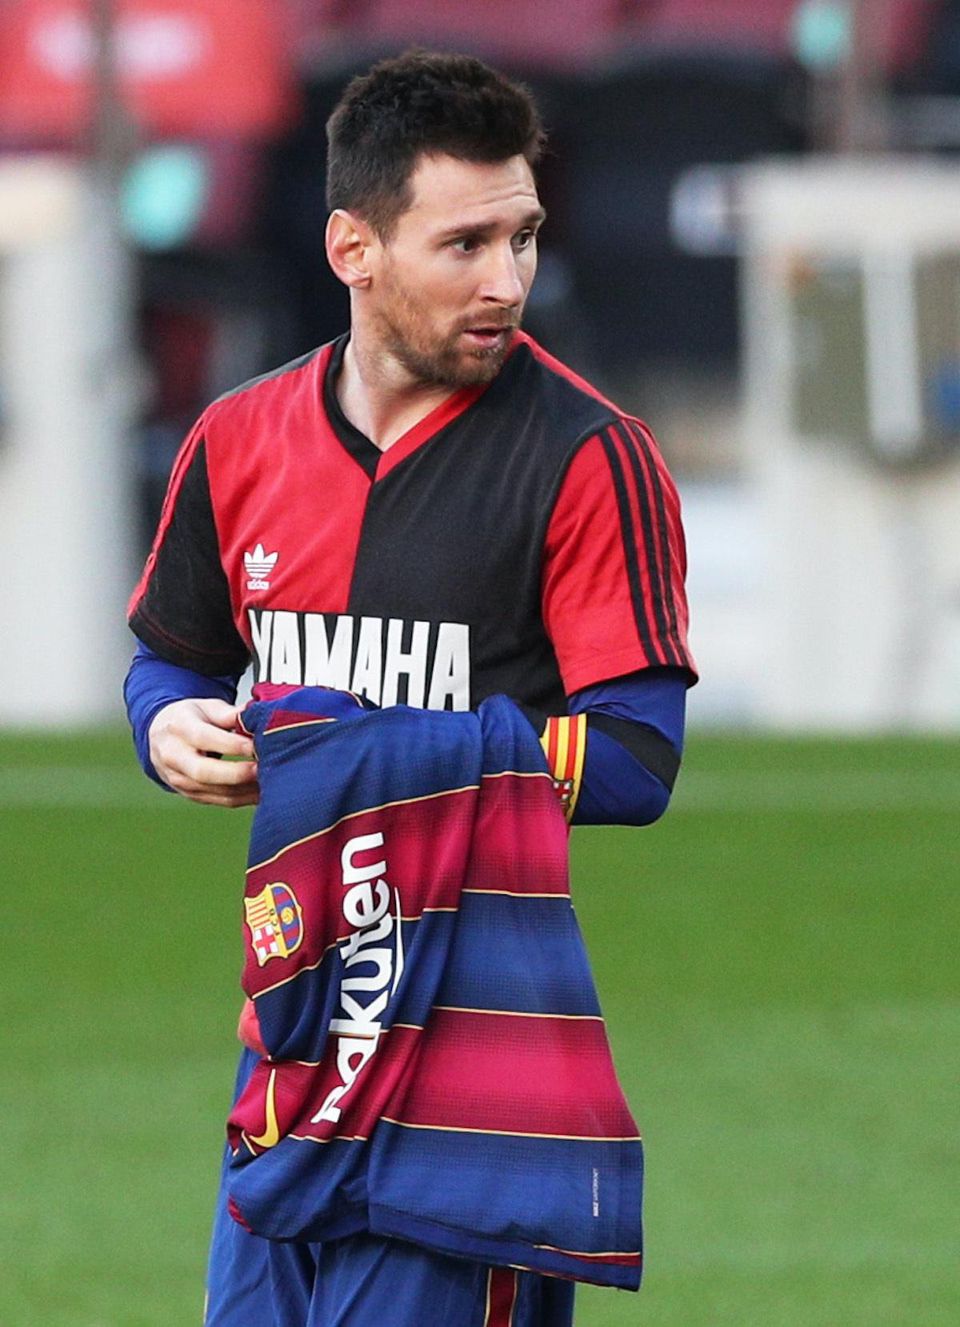 Lionel Messi si uctil Maradonu v drese Newell’s Old Boys.